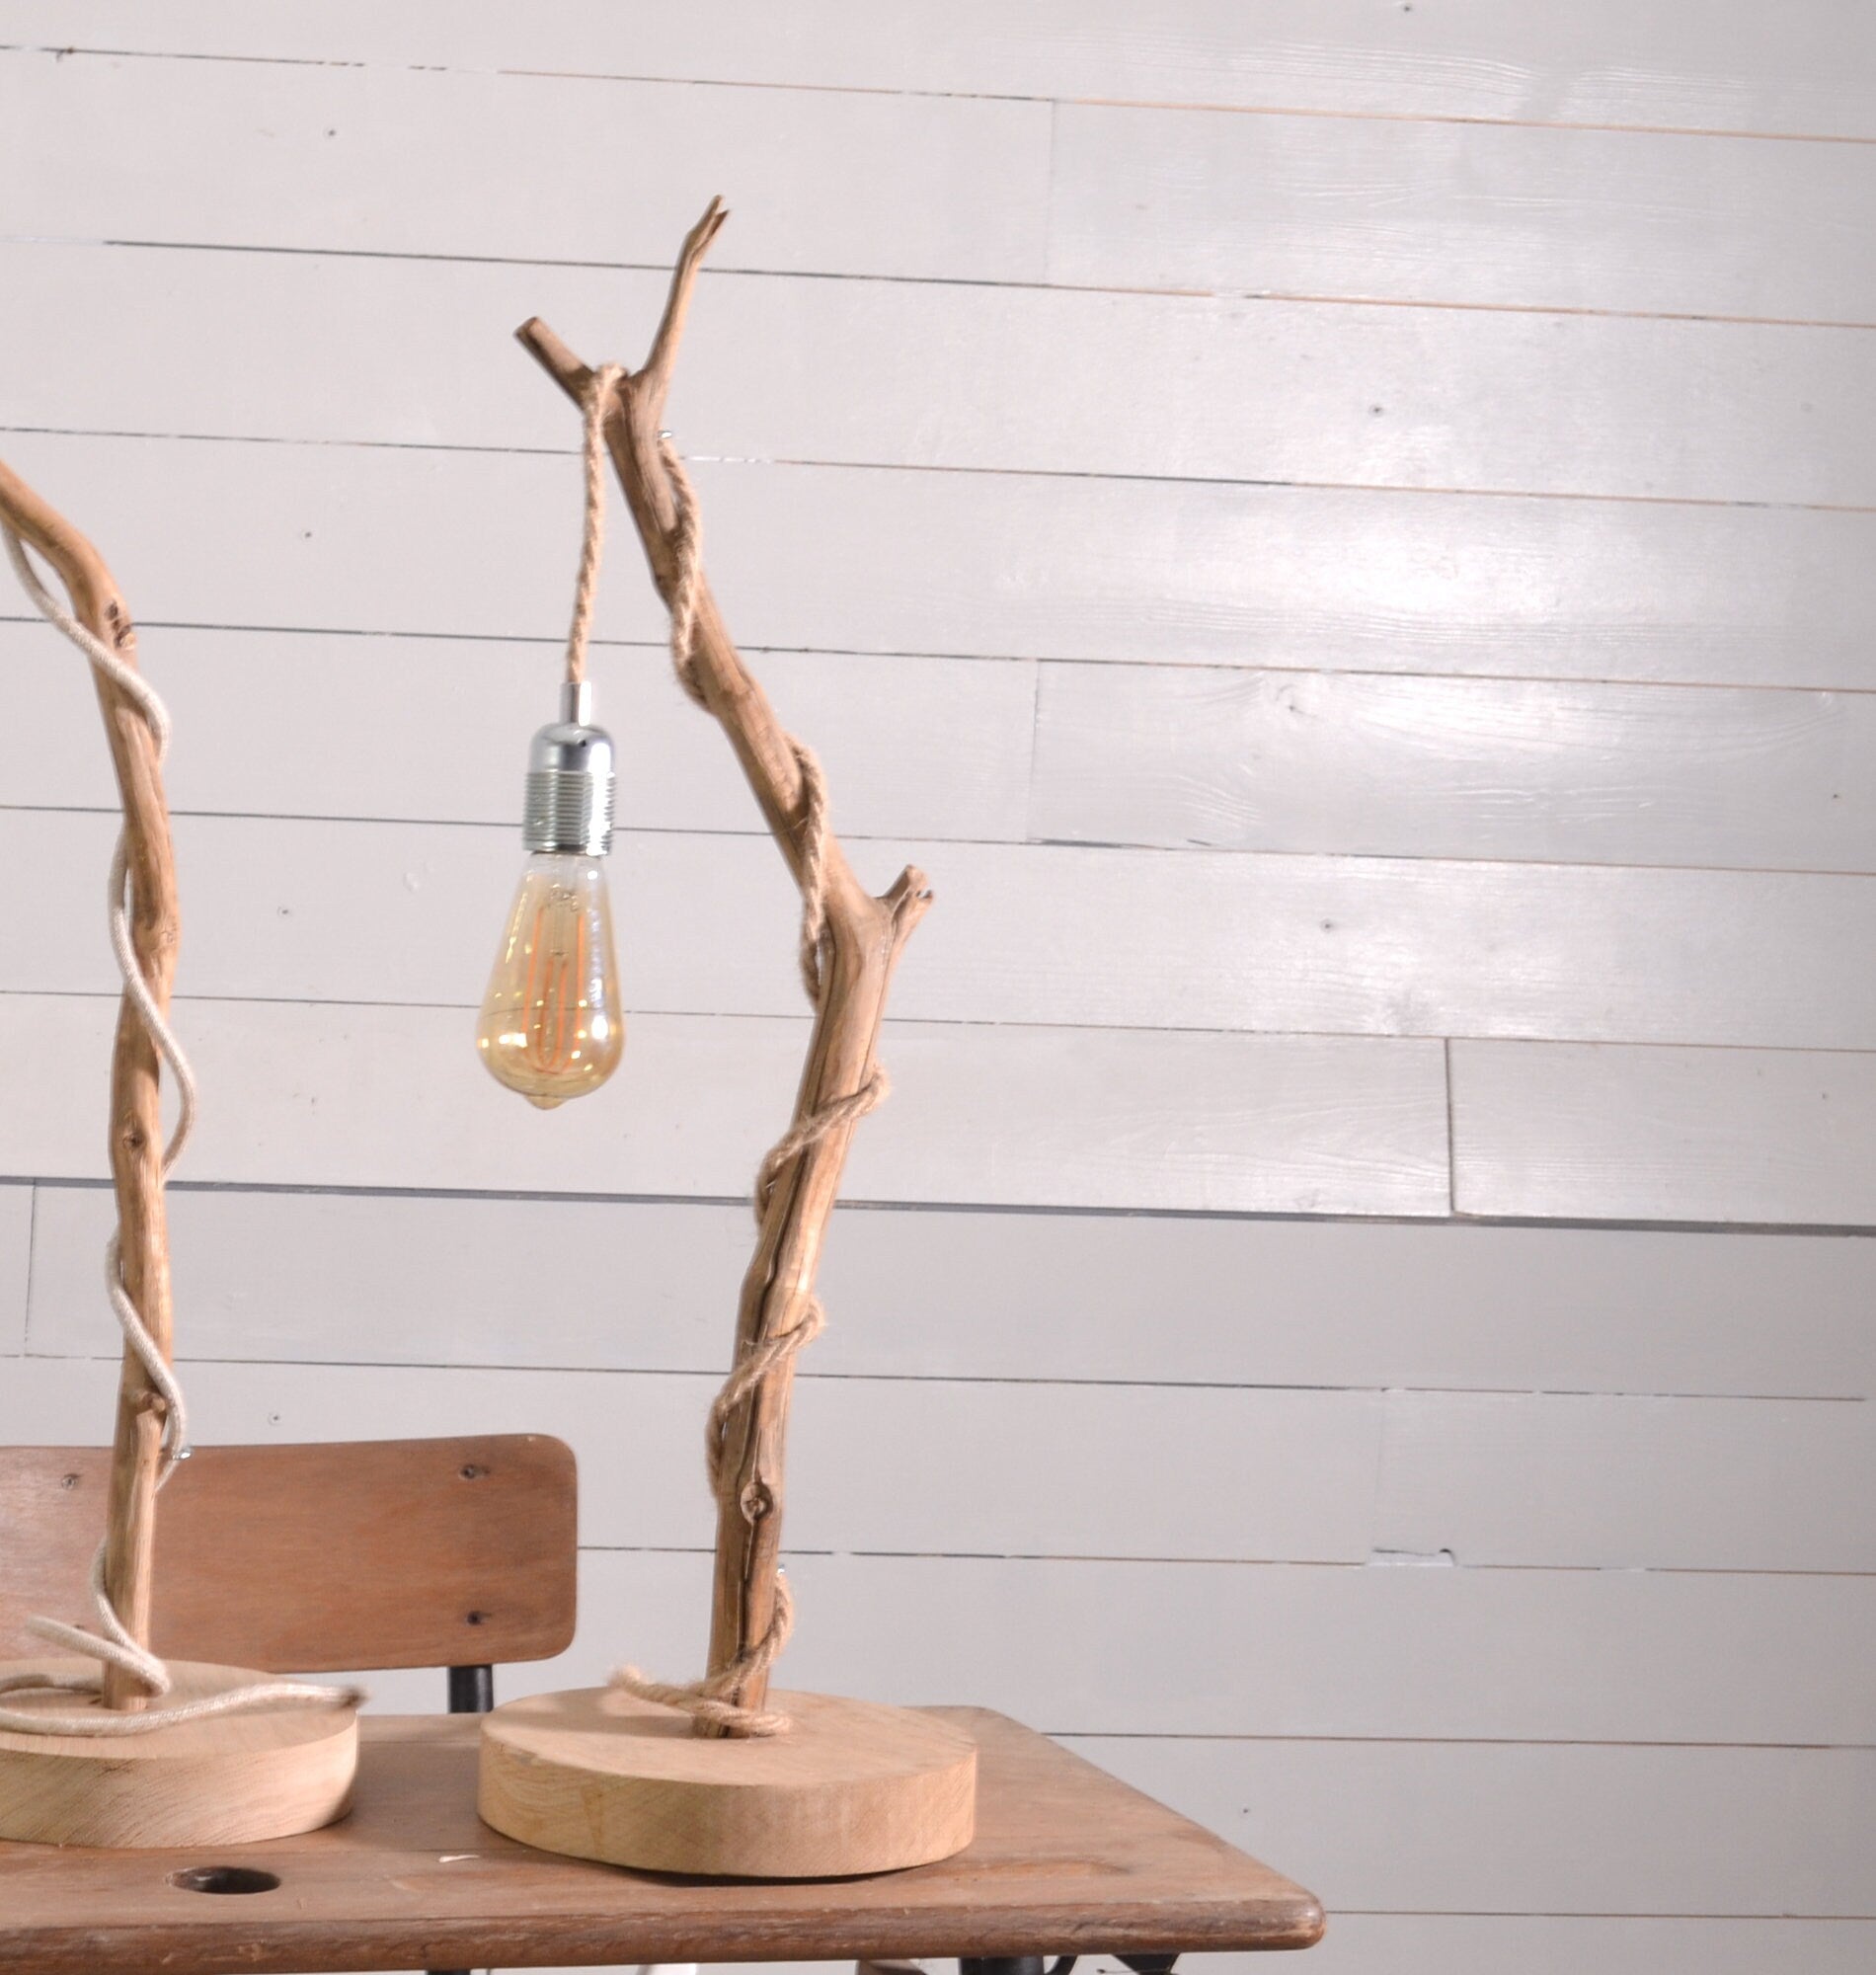 Lampe en bois naturel réalisée avec une branche de châtaignier, ampoule vintage et cable en jute